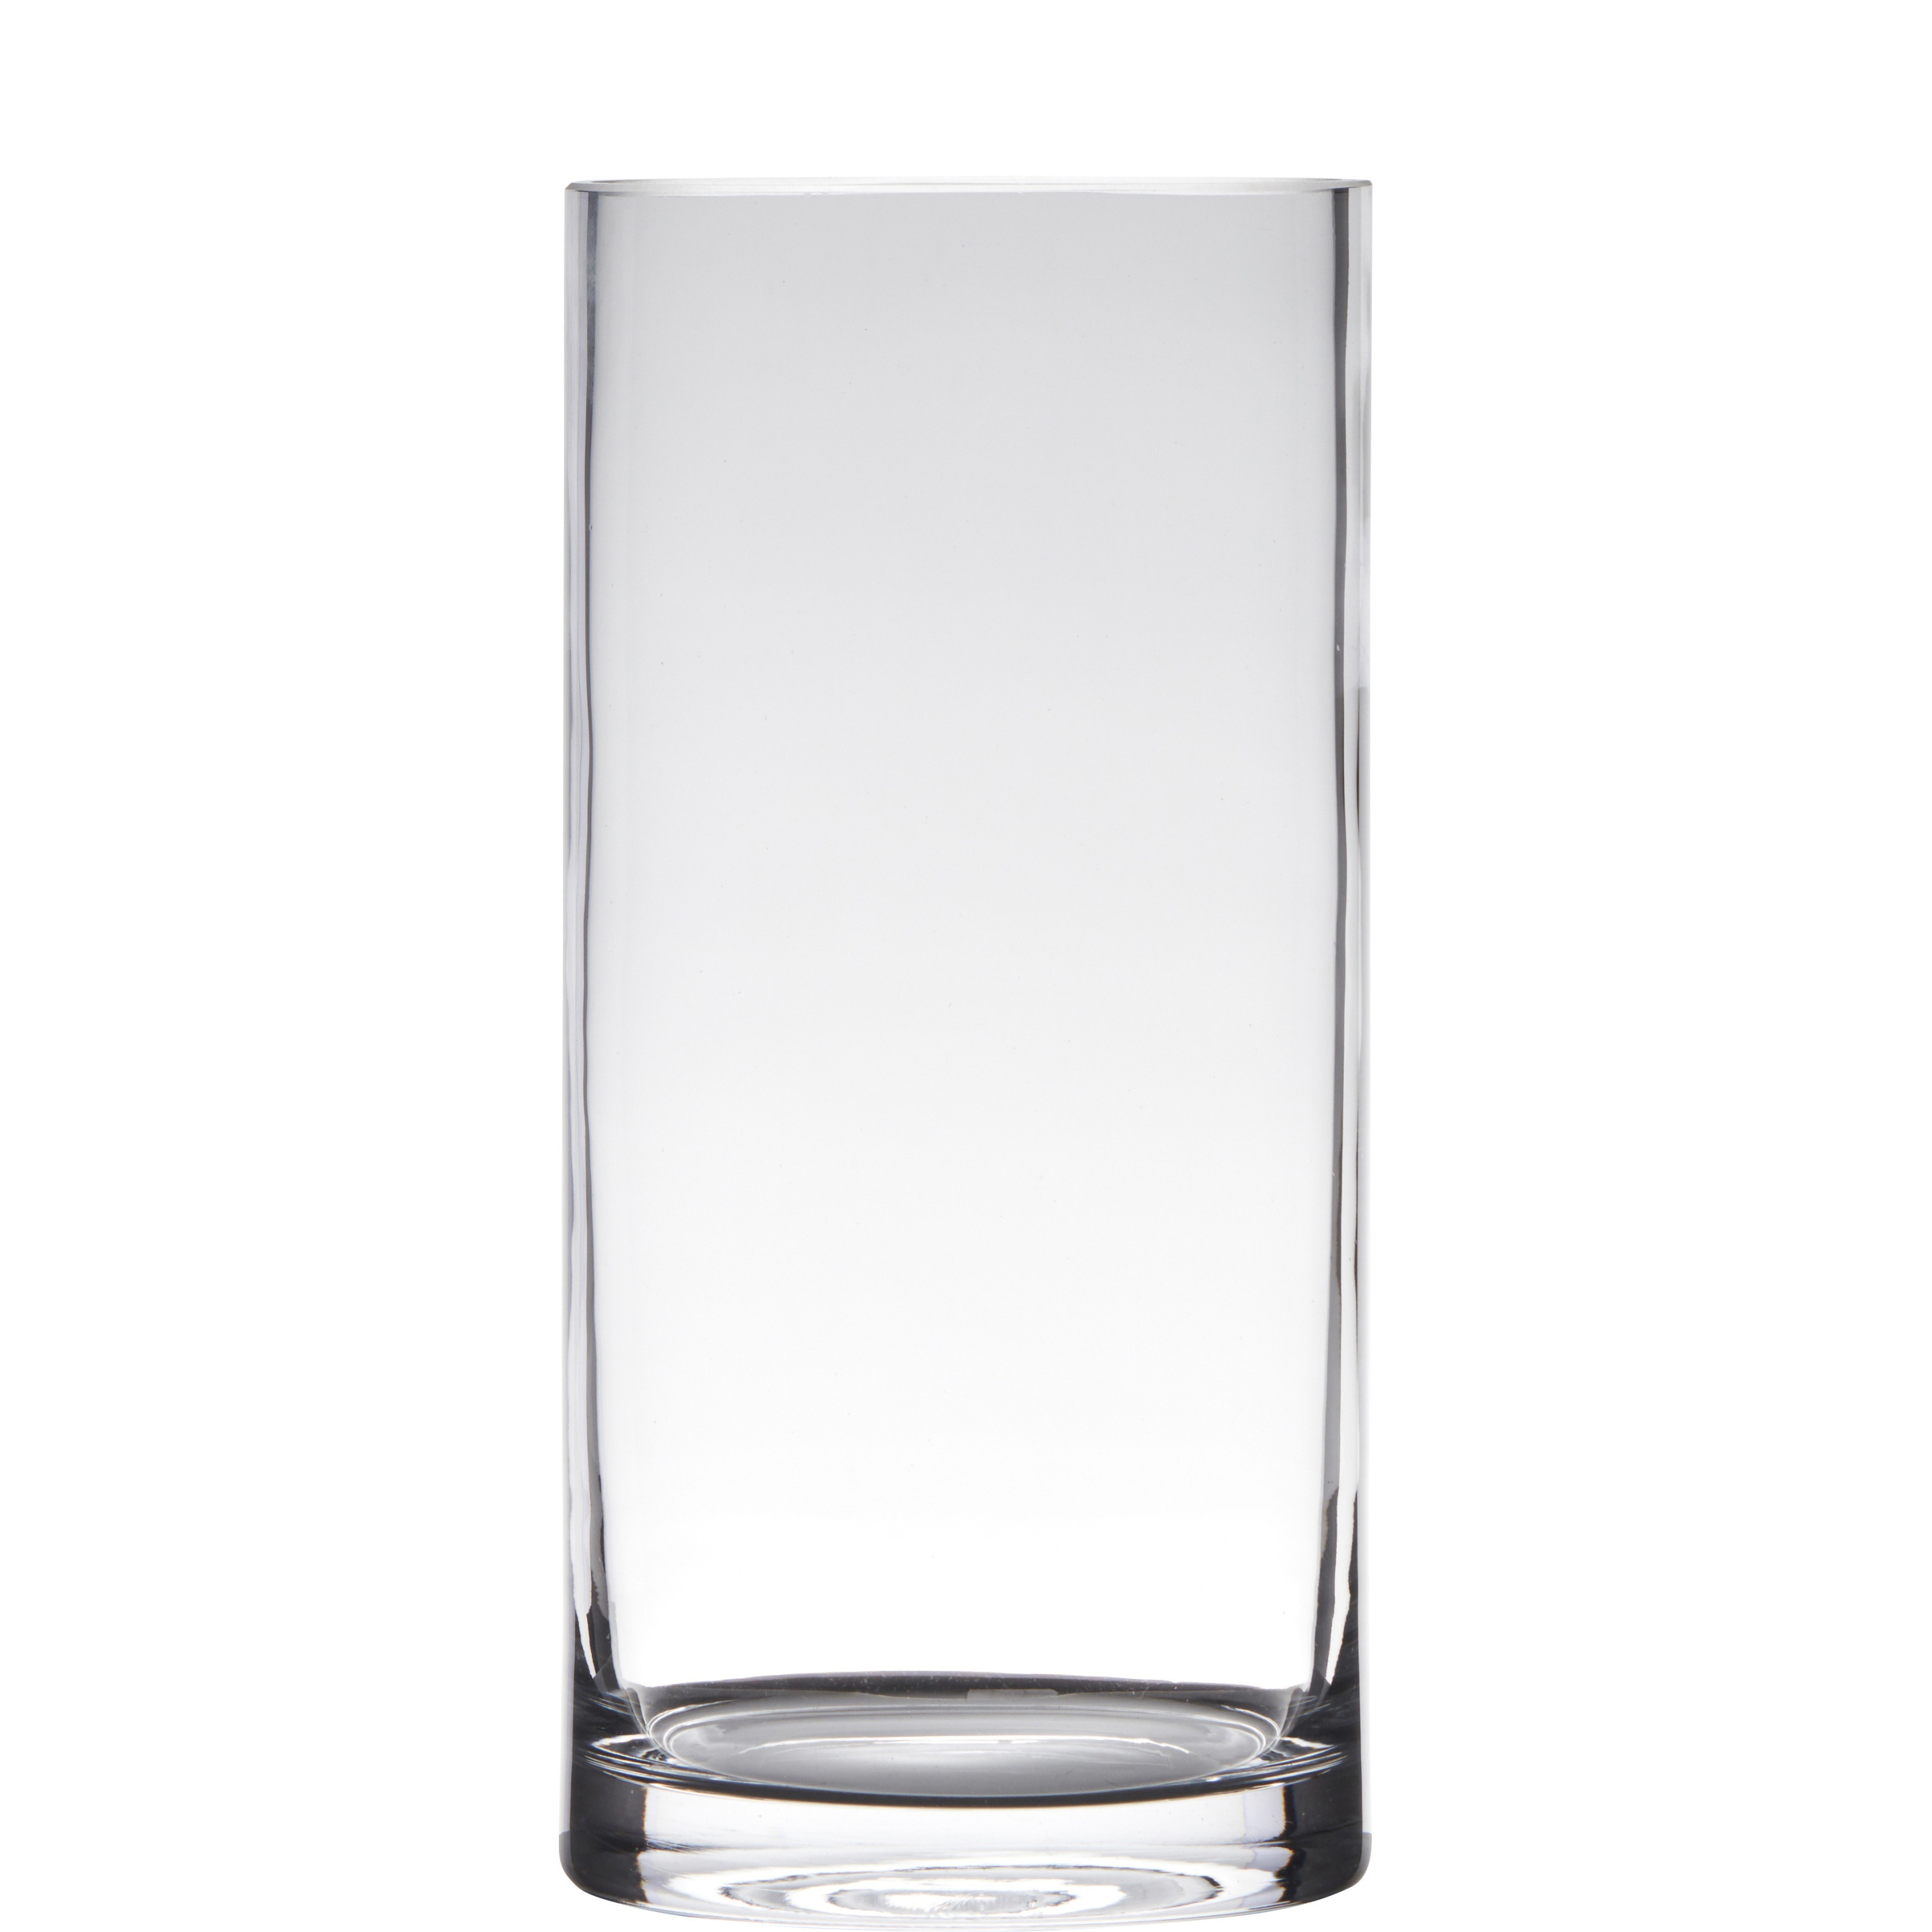 Hakbijl Glass Transparante home-basics cilinder vorm vaas/vazen van glas 35 x 15 cm -